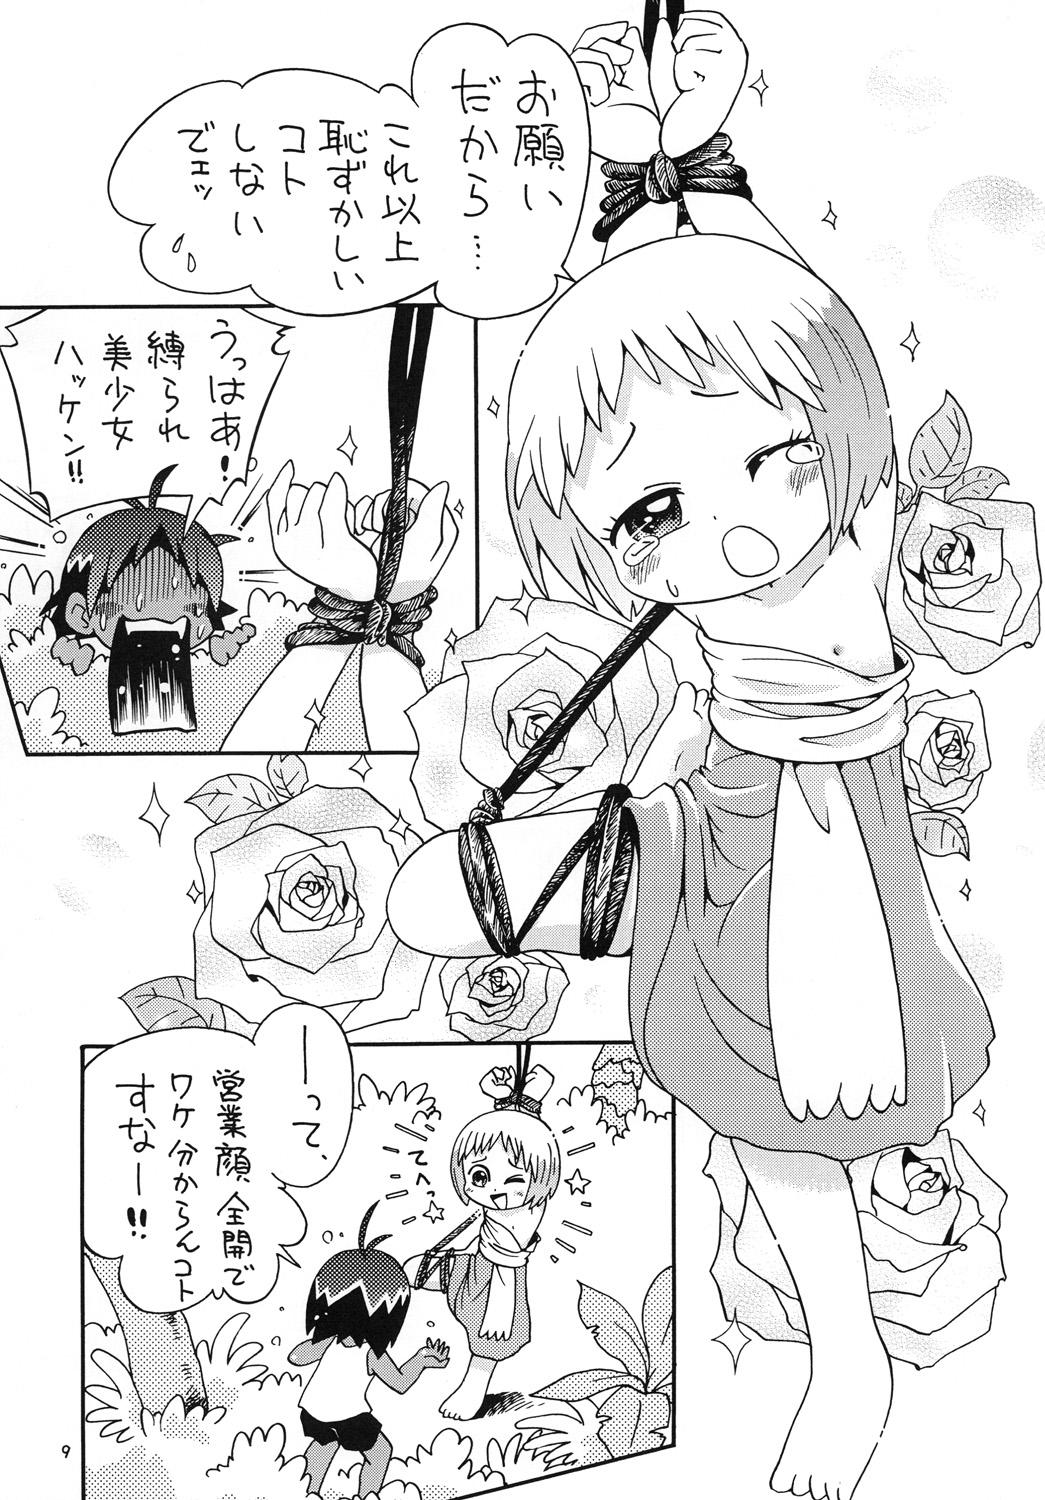 Cocksuckers Hotto☆Squall - Jungle wa itsumo hare nochi guu Softcore - Page 8